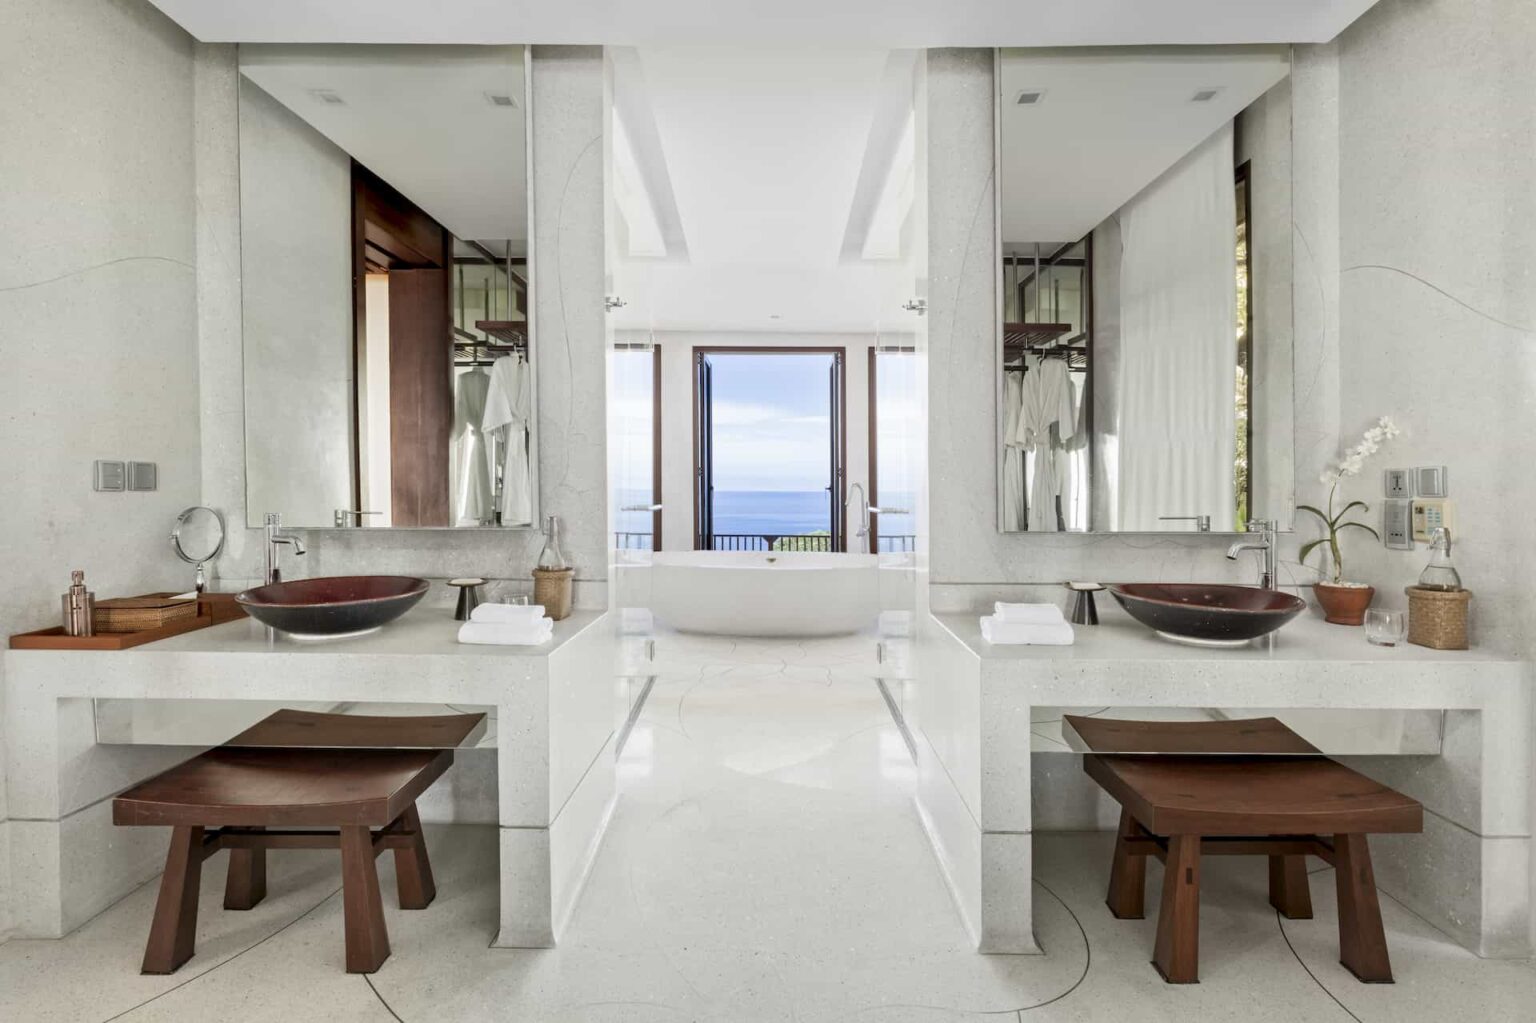 2 Bedroom Ocean Pool Suite spacious bathroom with freestanding tub and ocean view